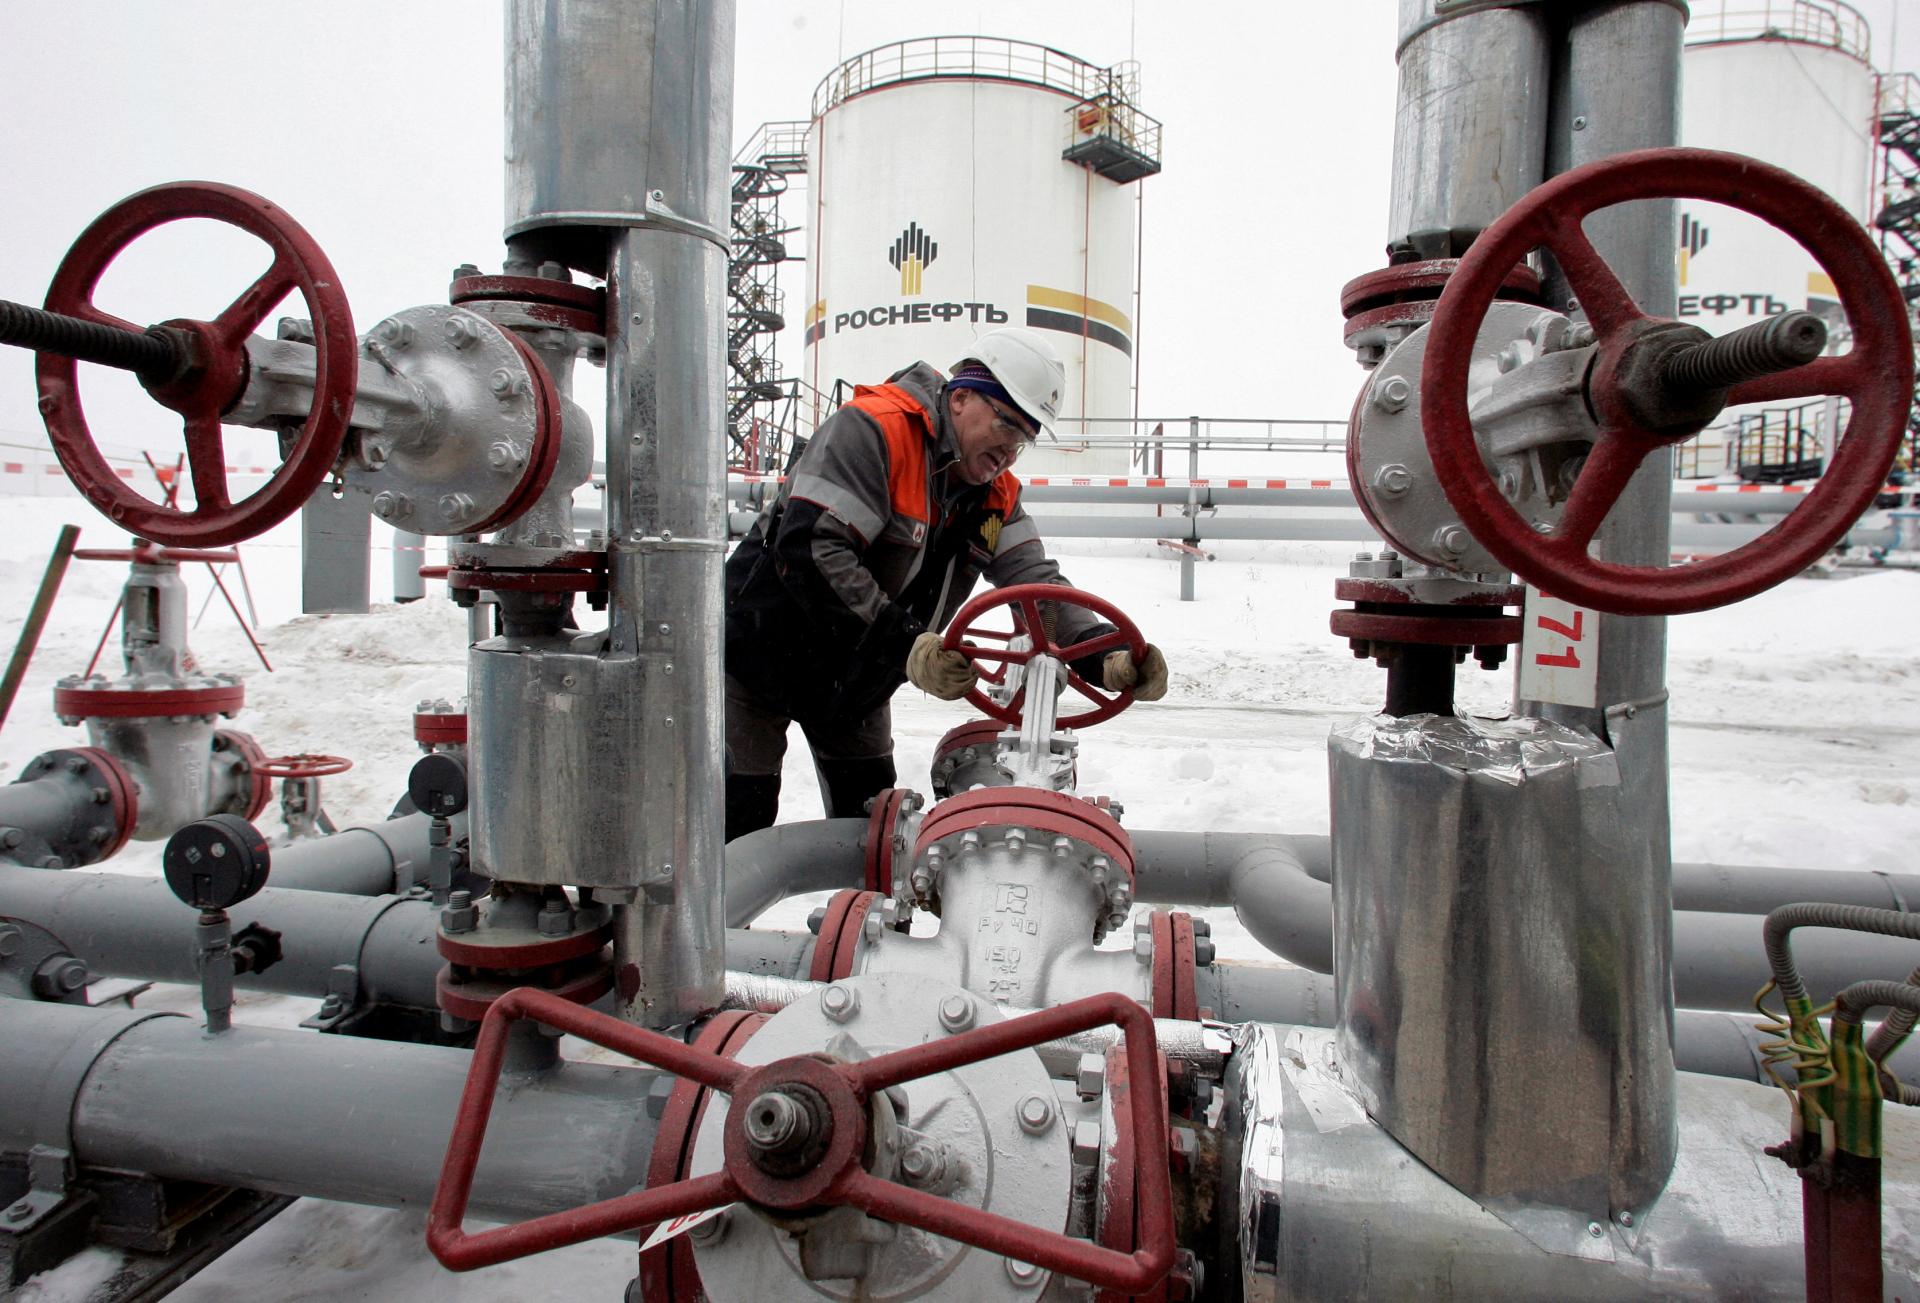 Viaceré ruské ropné produkty sa obchodujú nad cenovým stropom G7, hodnota napriek sankciám rastie